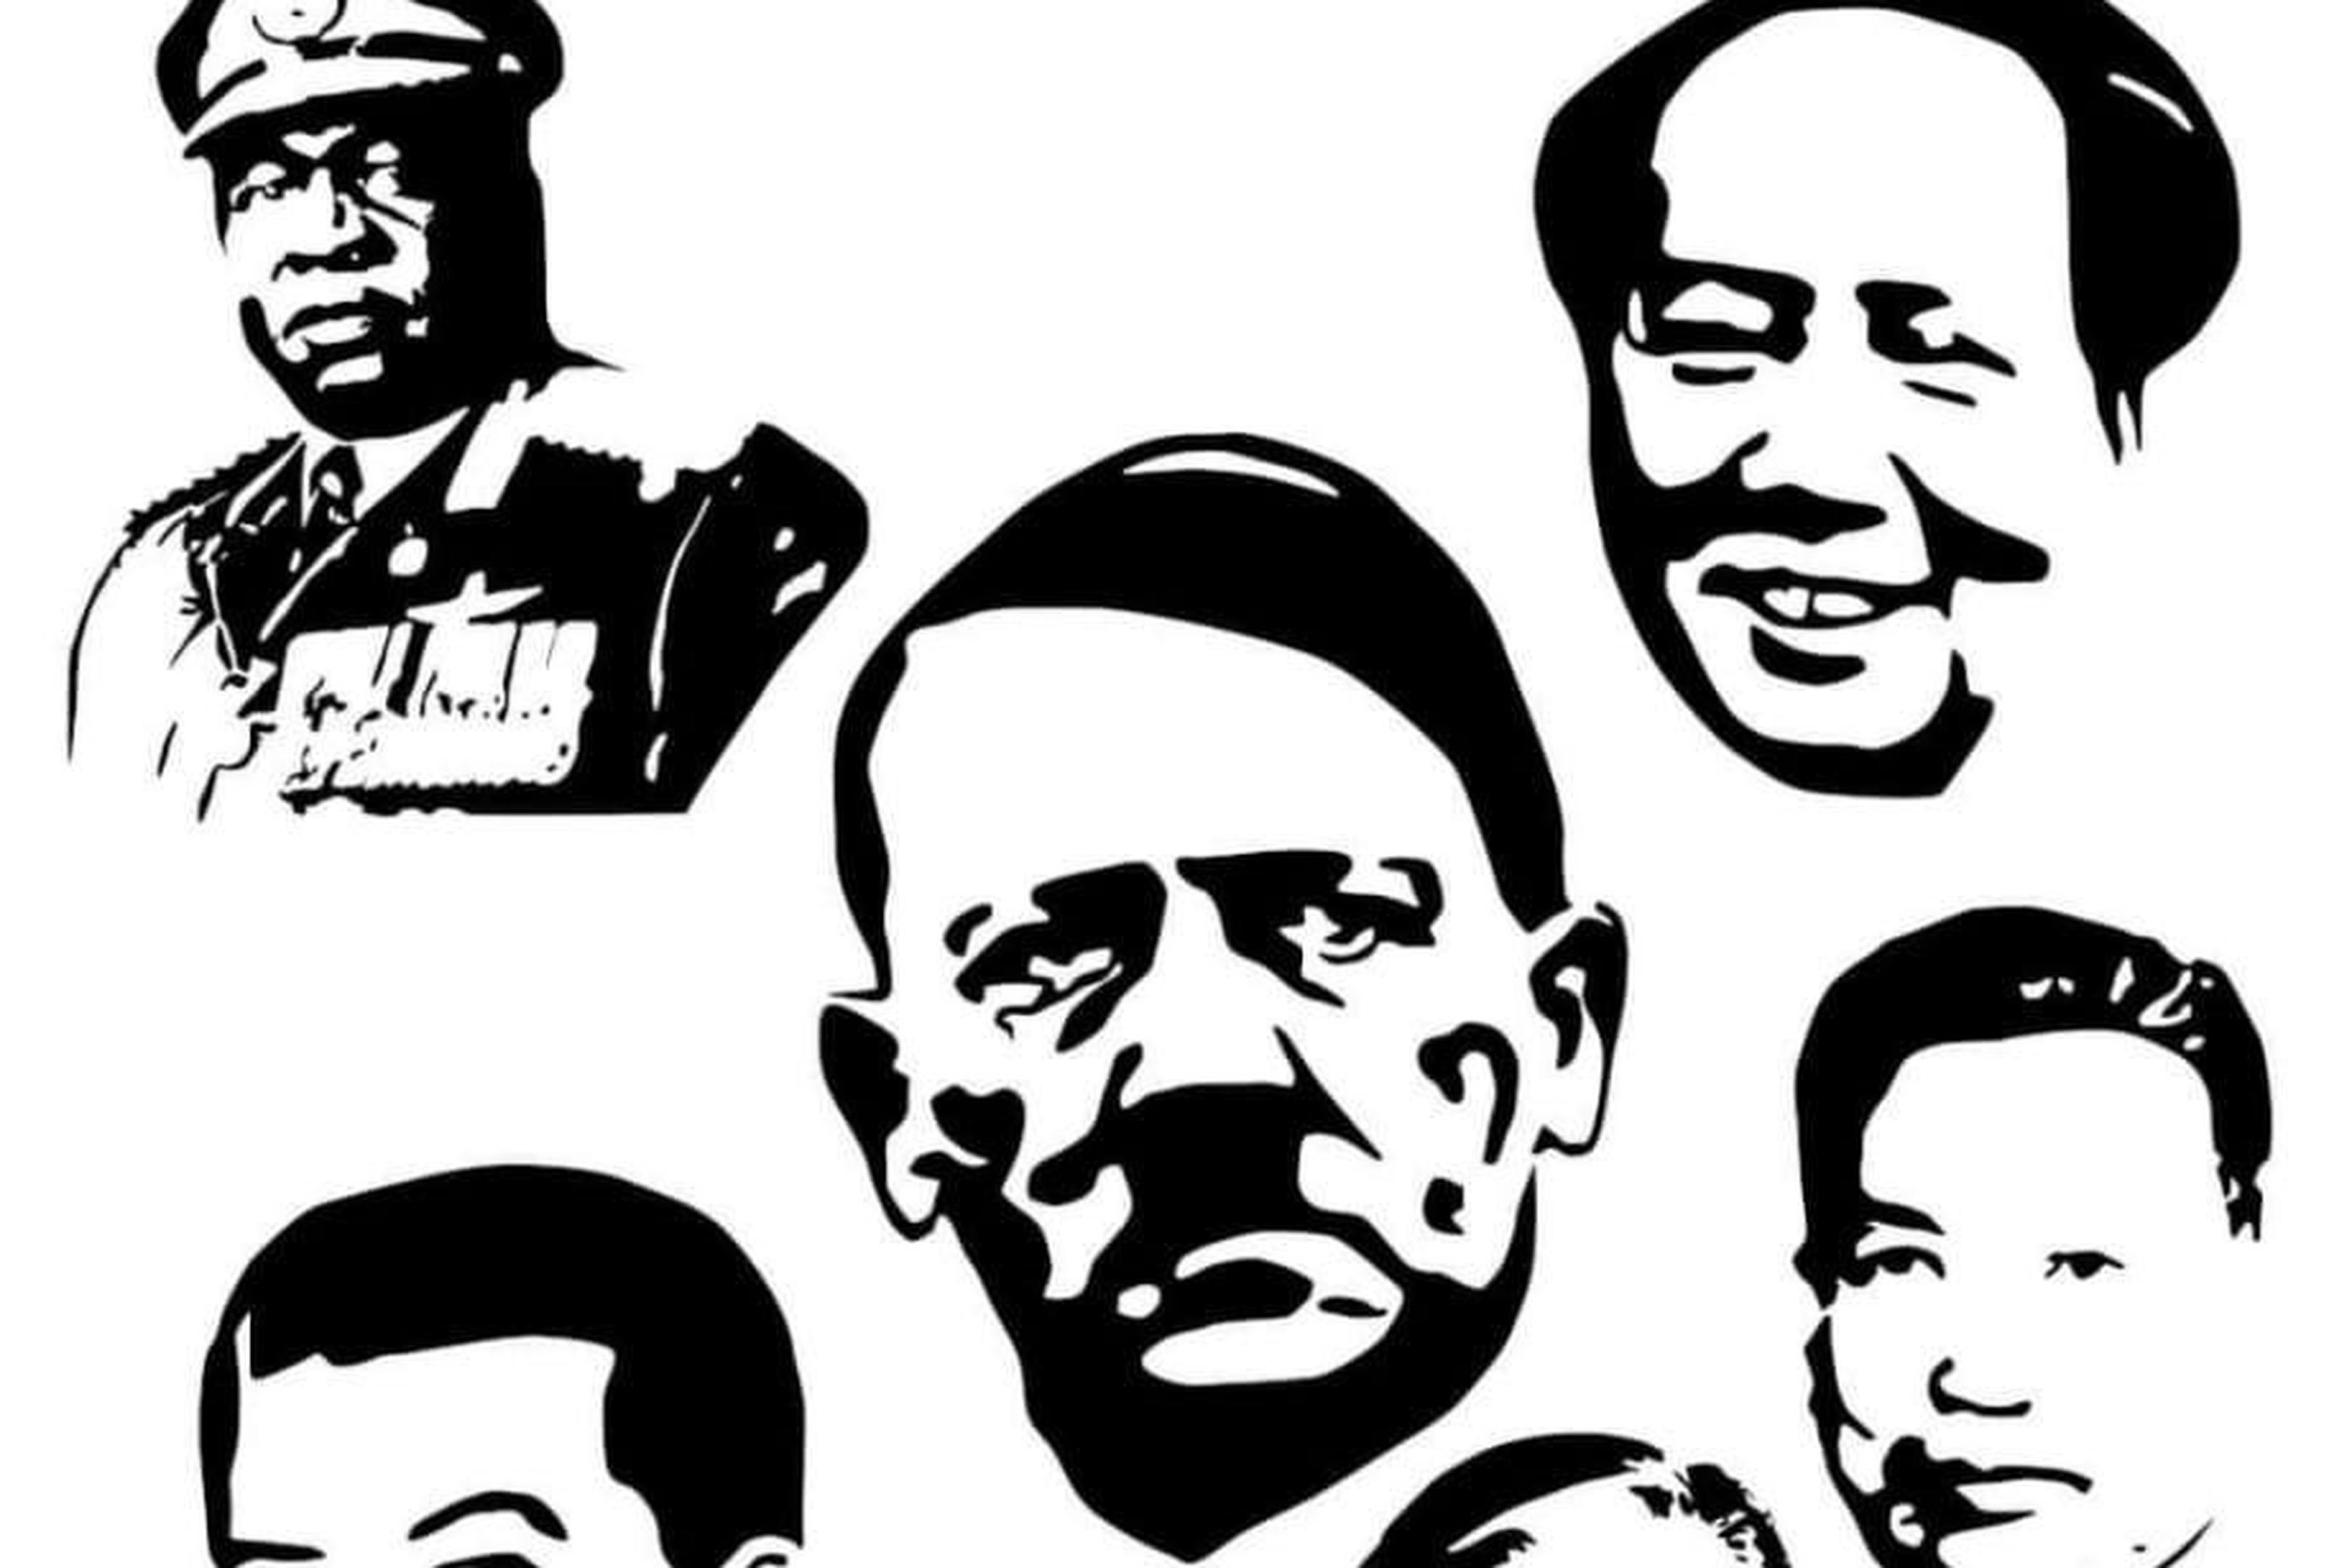 Hitler, Stalin, Mao: Ein Screenshot der Facebook-Seite von Fritz C. zeigt exakt dieselben Bilder historischer Massenmörder wie sein beschlagnahmtes Hemd.